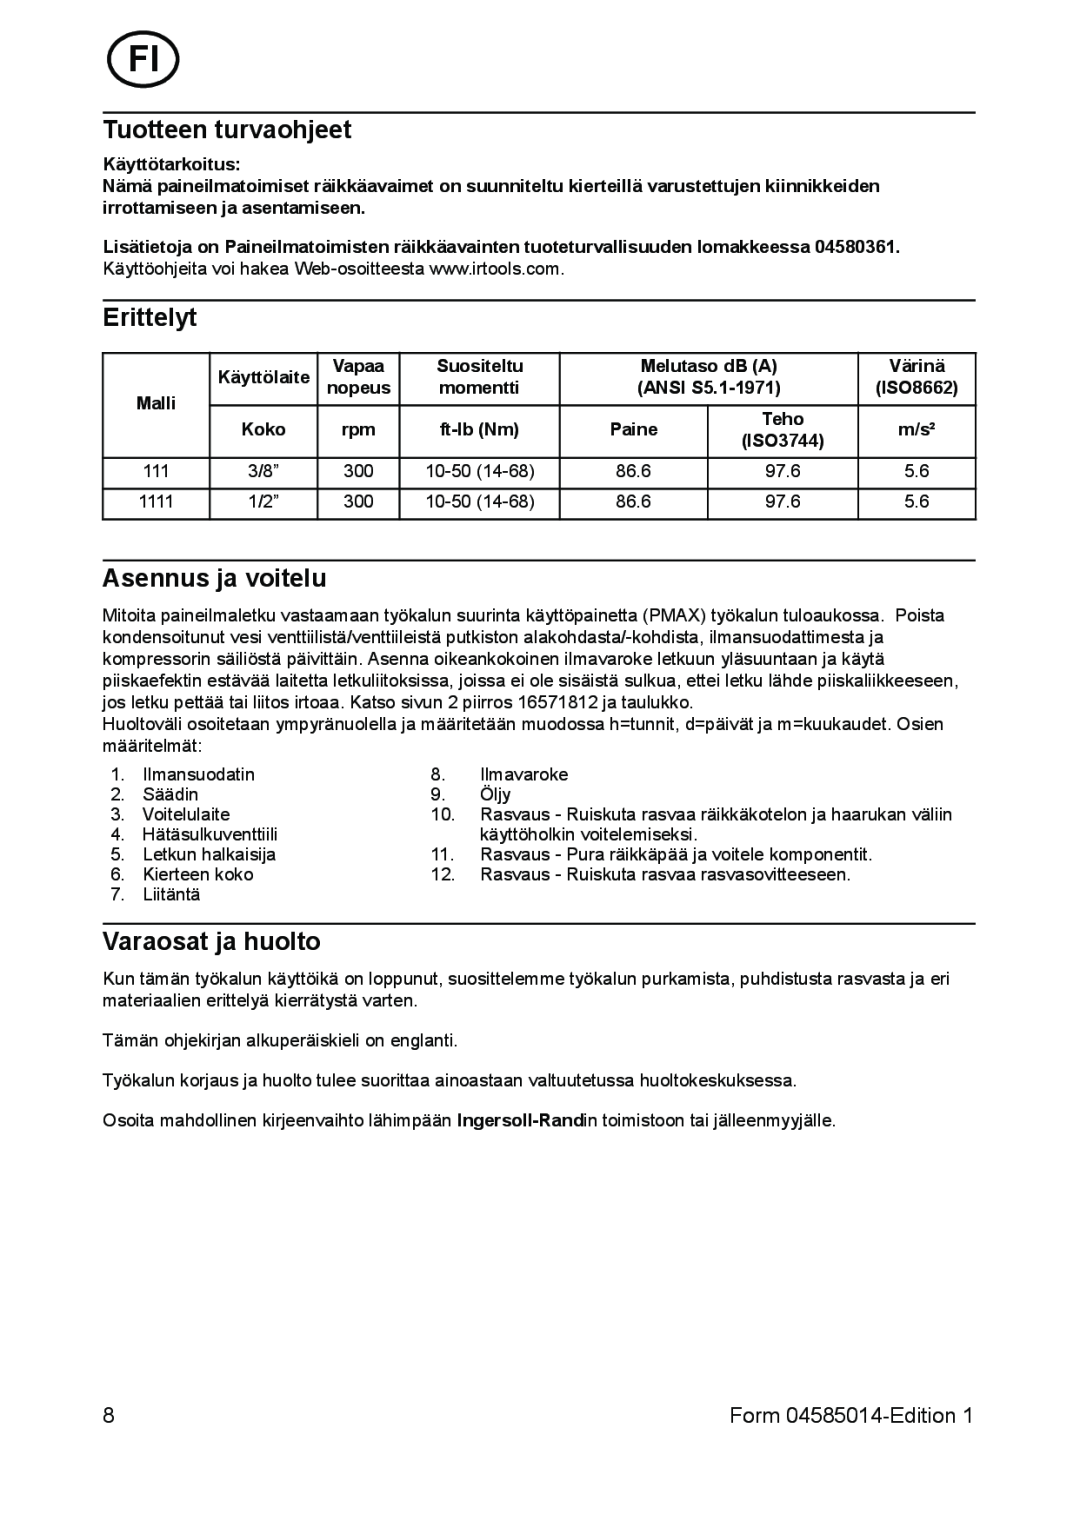 Ingersoll-Rand 1111 manual Tuotteen turvaohjeet, Erittelyt, Asennus ja voitelu, Varaosat ja huolto, Form 04585014-Edition 